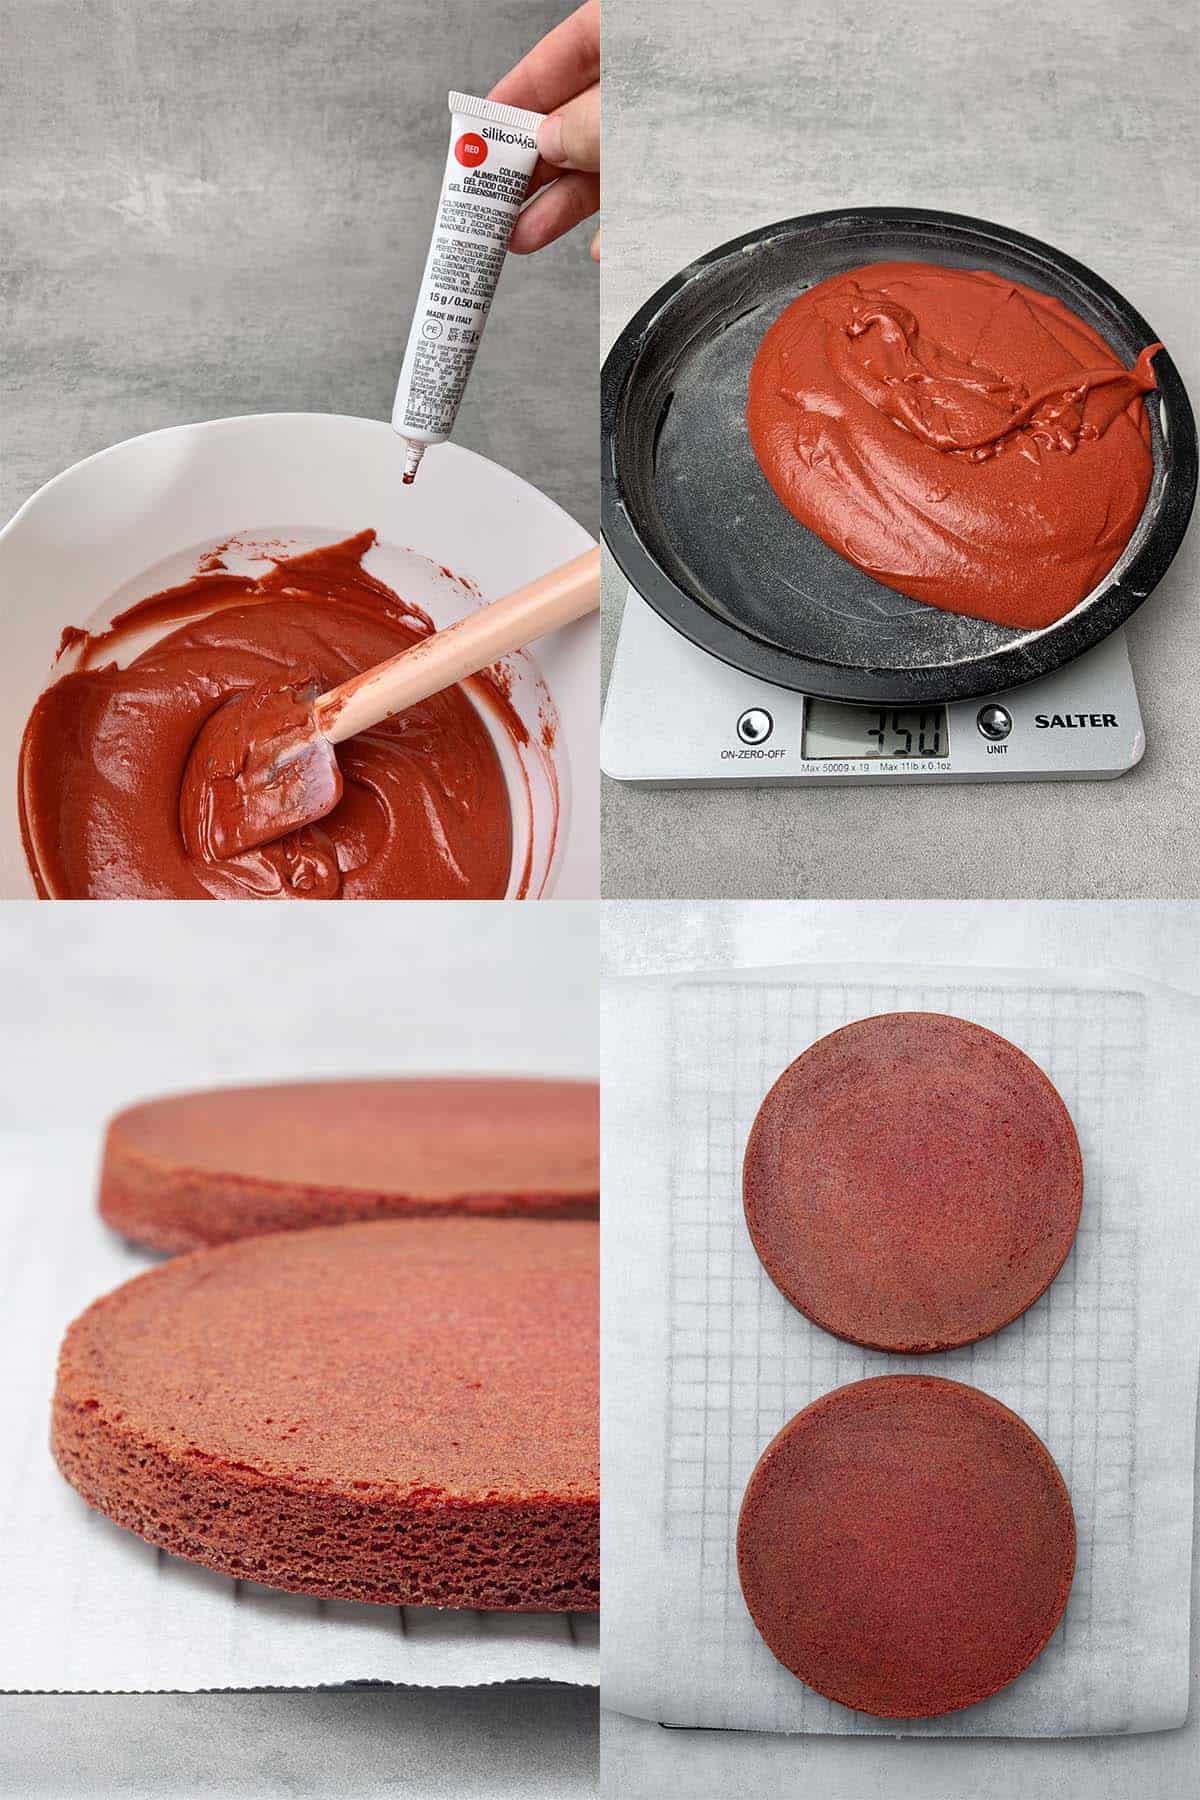 Red velvet cake process.